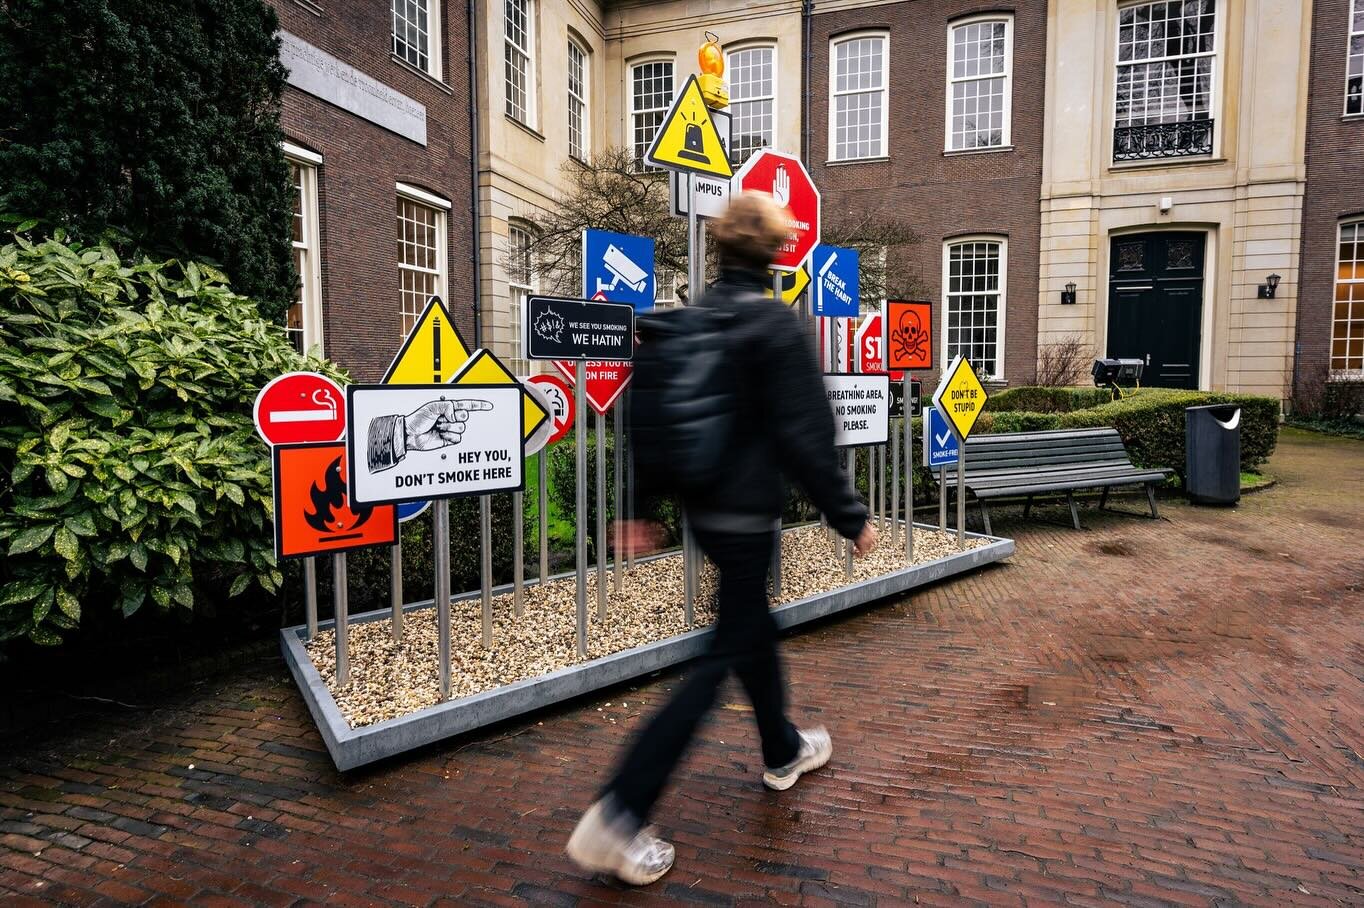 Our new campaign is smoking! 
Samen met de @hogeschoolvanamsterdam en @uva_amsterdam hebben wij het anti-rook bordenbos in het leven geroepen. 🚭

Hiermee is op een niet te missen wijze aandacht besteed aan het rookverbod op de campussen in Amsterdam